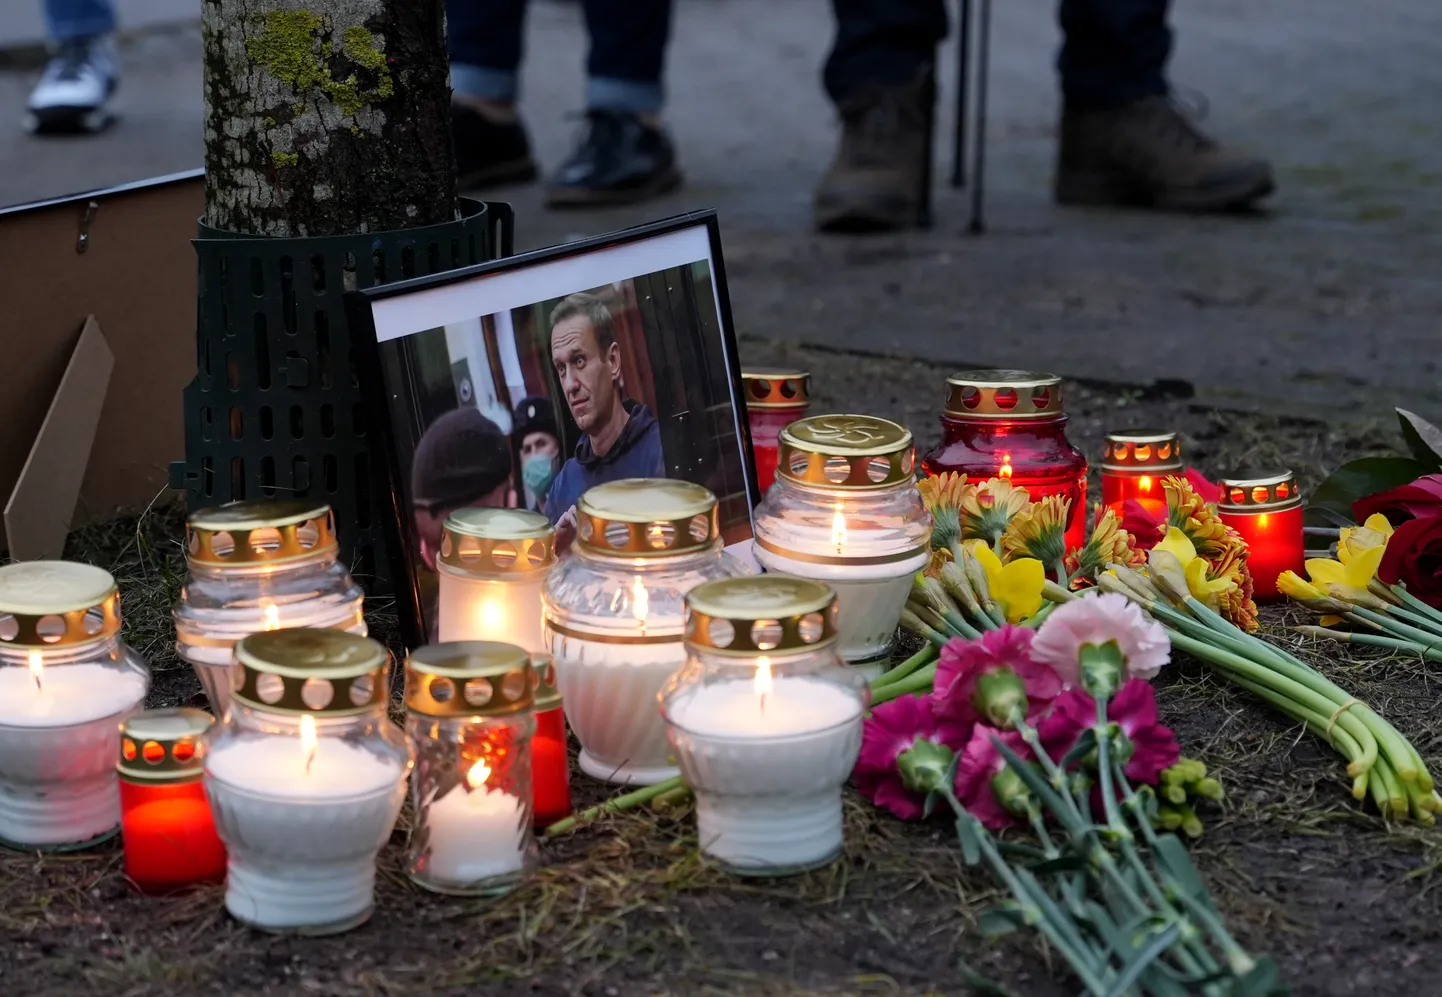 Pieminot Krievijas opozīcijas līdera Alekseja Navaļnija nāvi, iepretim Krievijas vēstniecībai norisinās veltīts piemiņas pasākums.